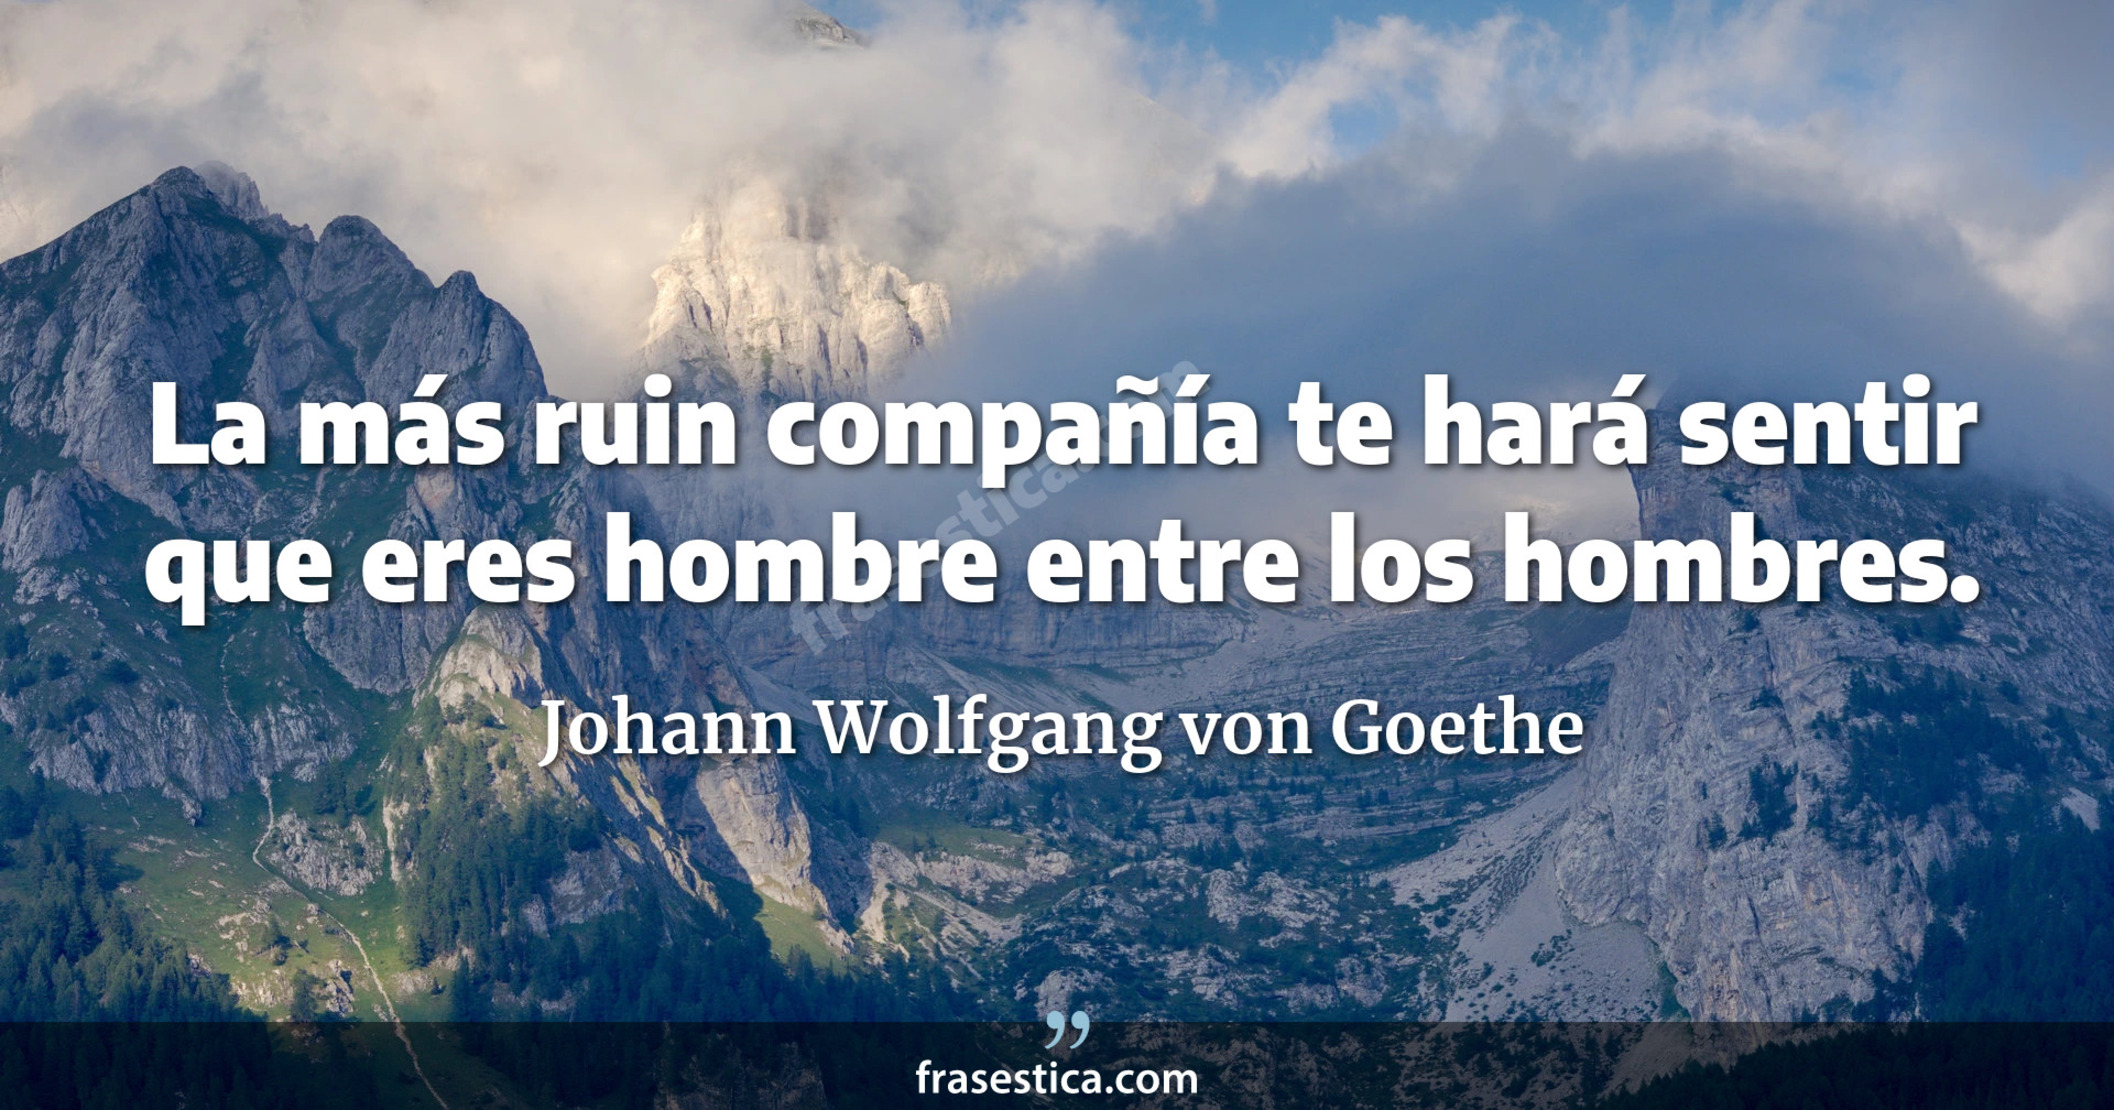 La más ruin compañía te hará sentir que eres hombre entre los hombres. - Johann Wolfgang von Goethe